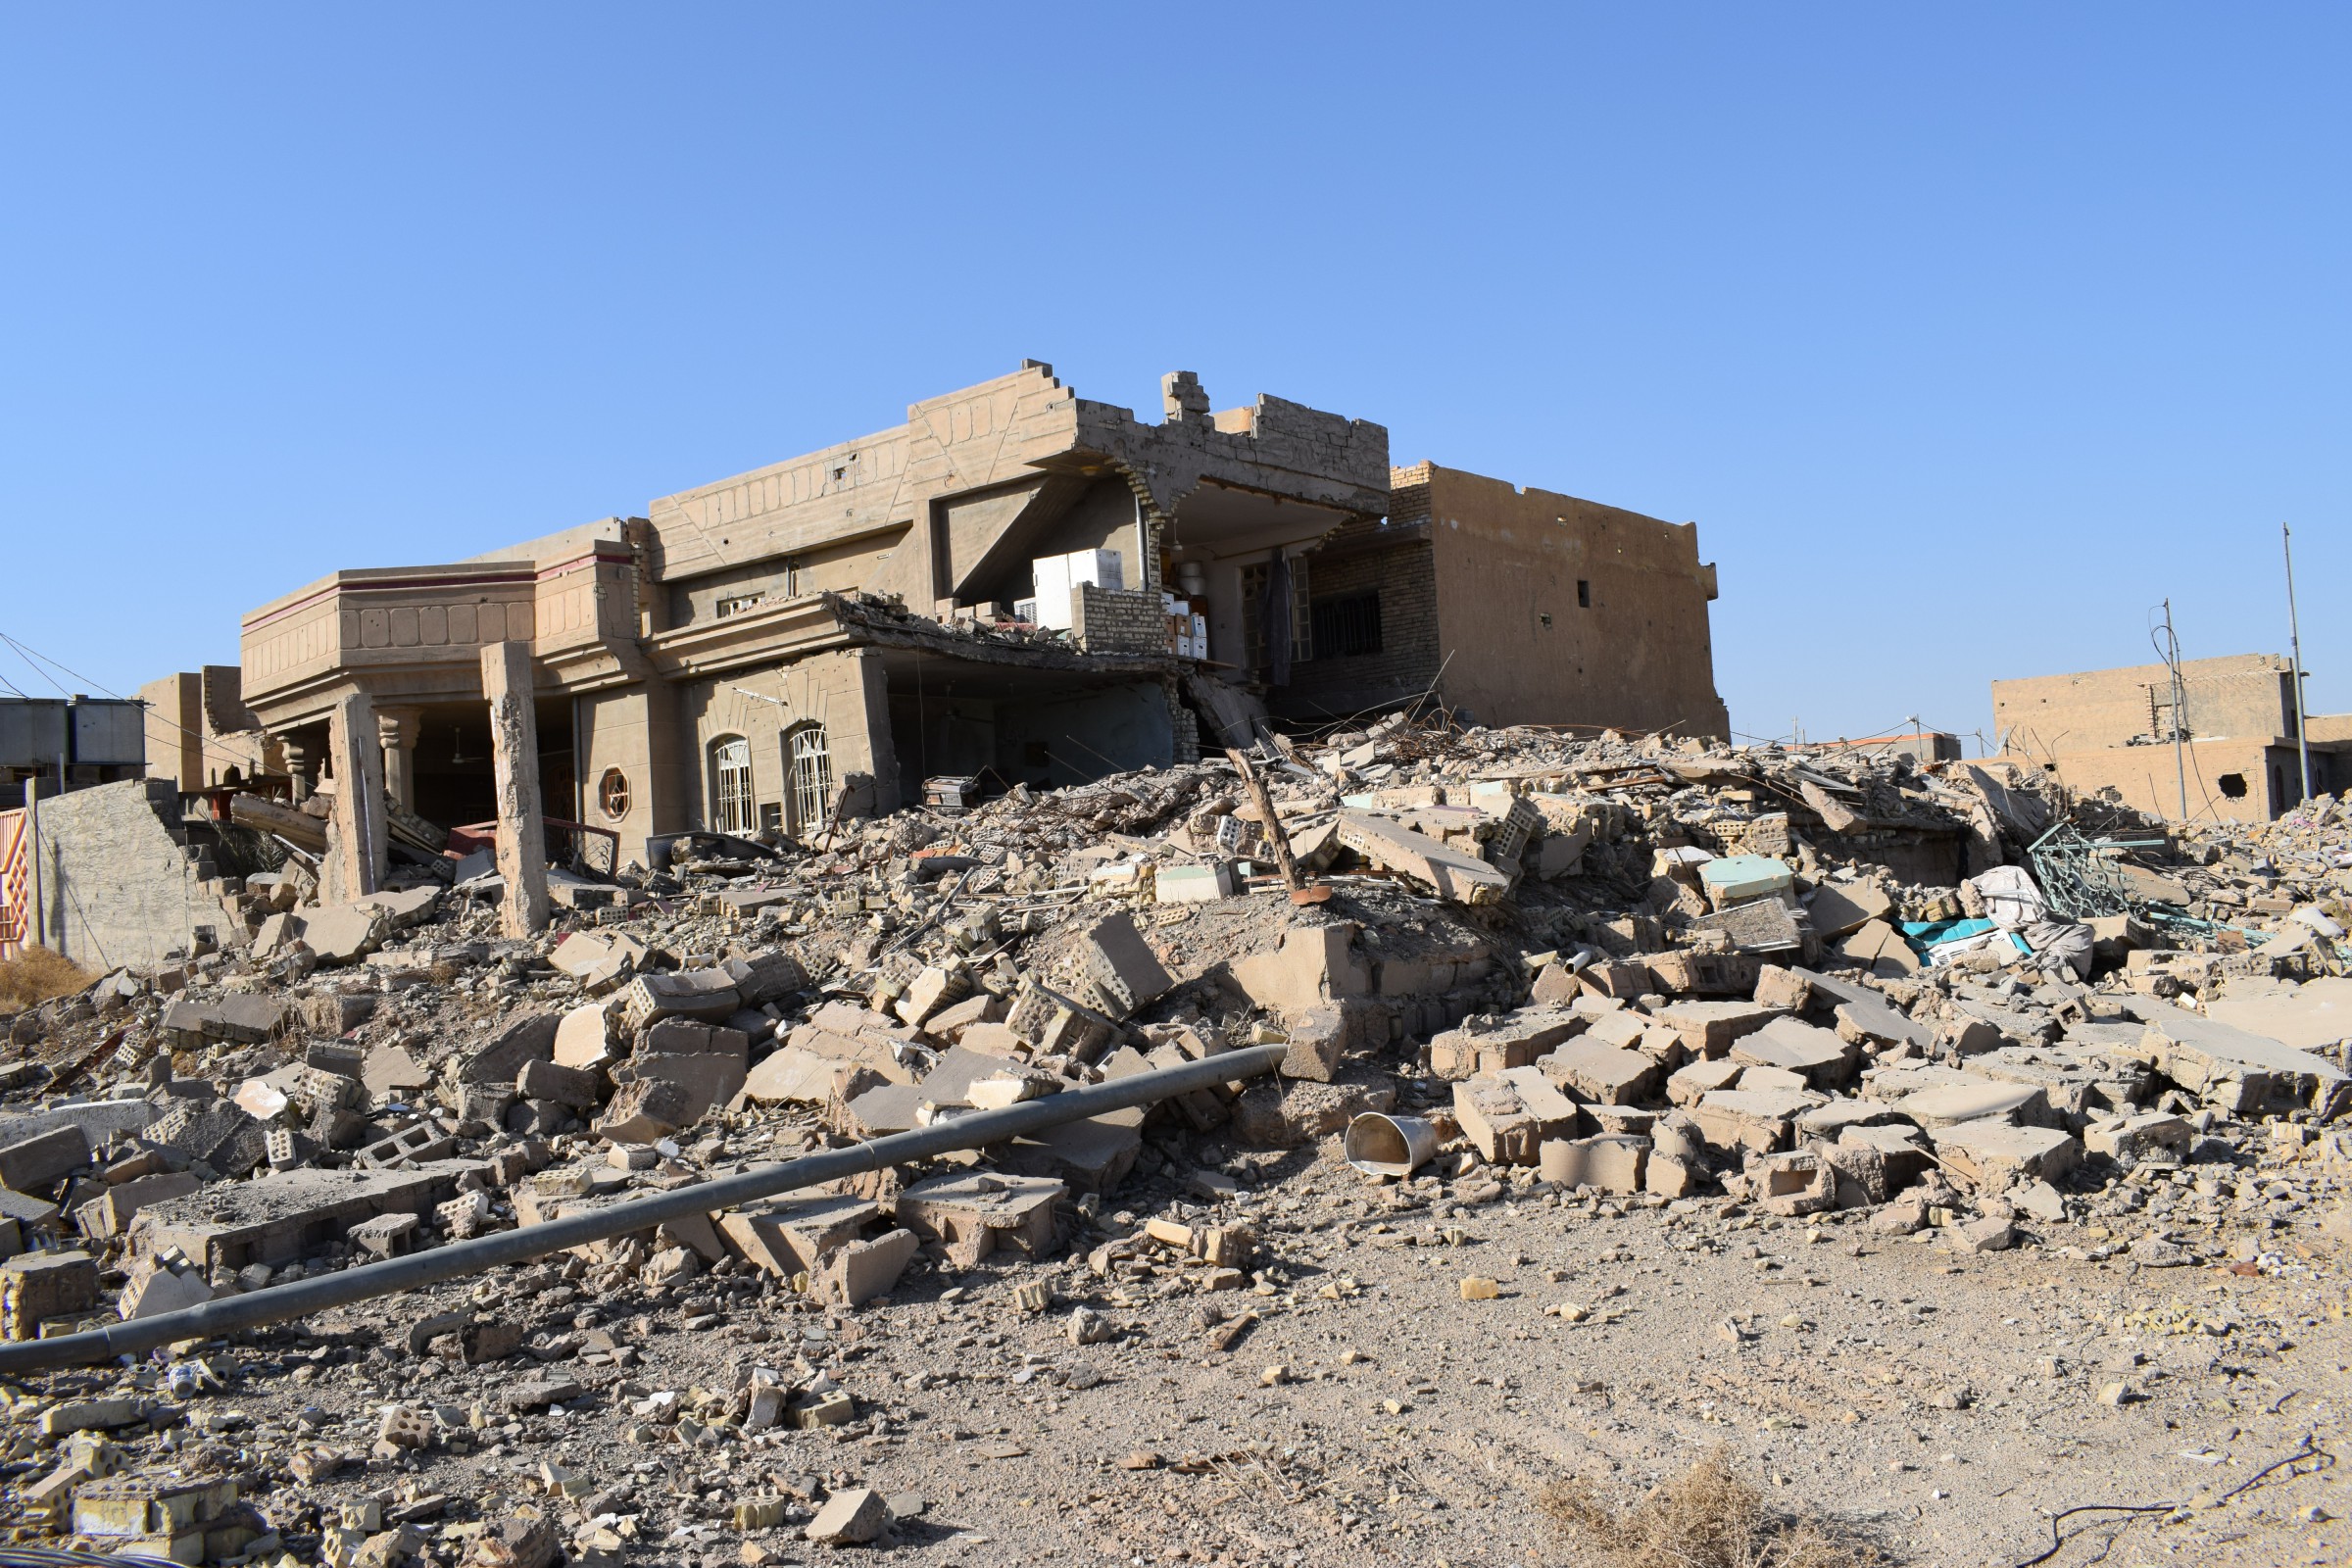 الأنبار تناشد المنظمات الدولية إعادة إعمار 100 دار واطئة الكلفة دمرها “داعش”